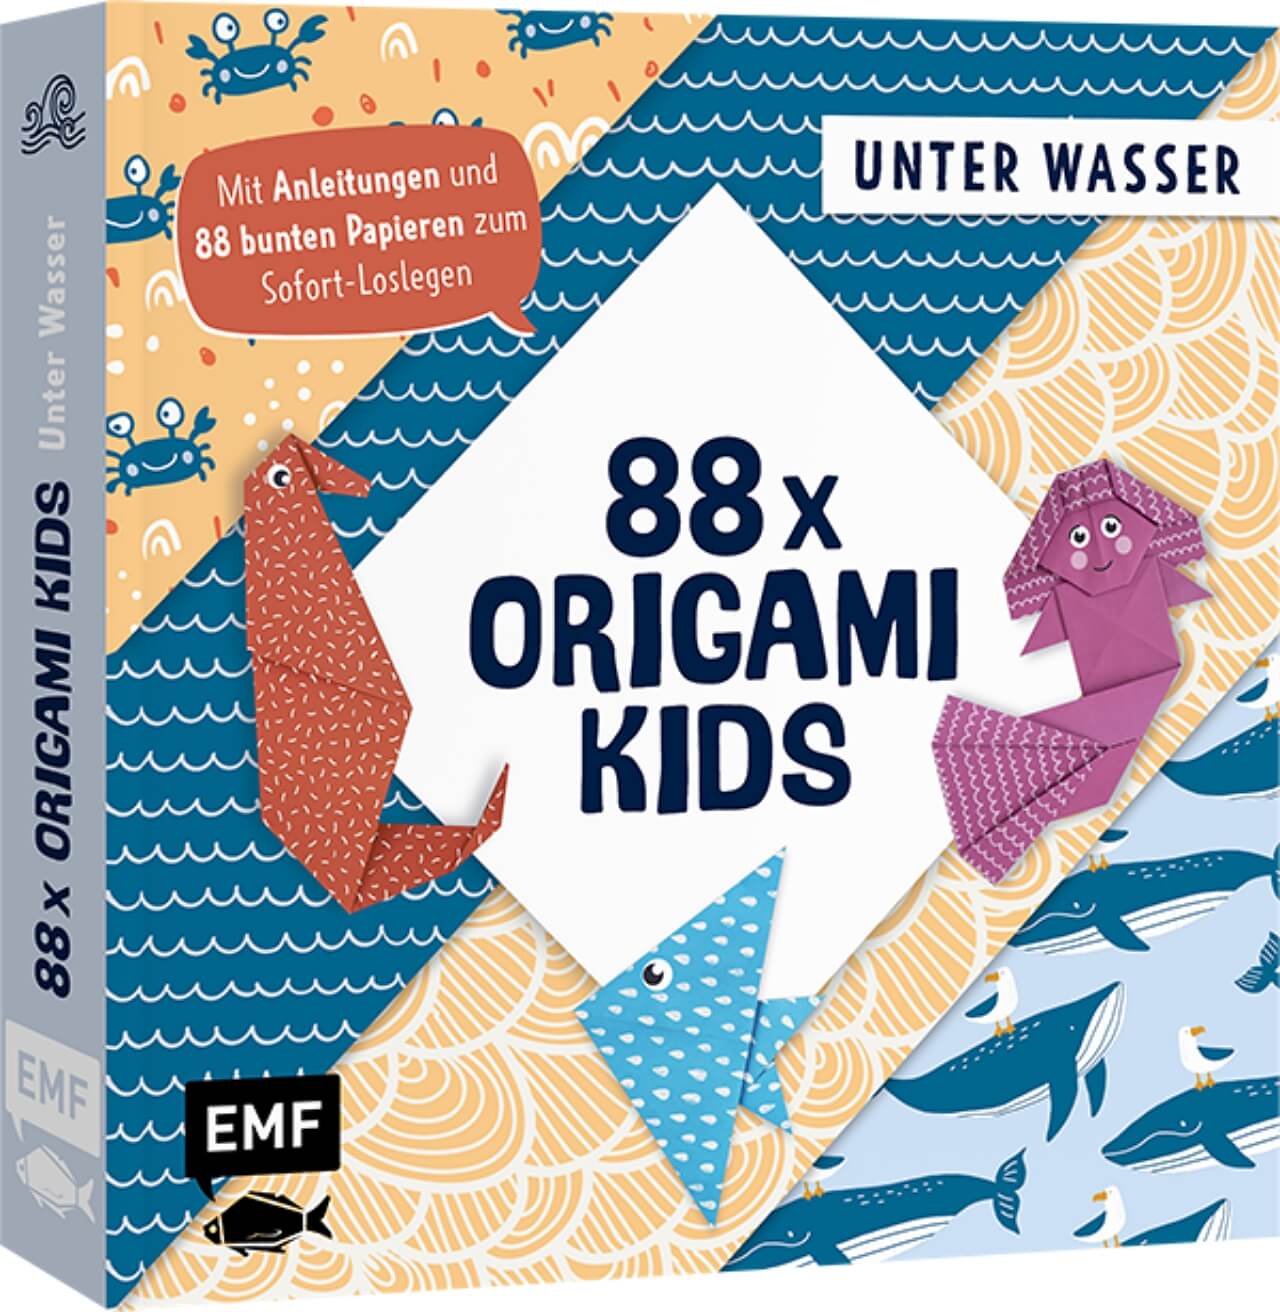 EMF 88x Origami Kids Unter Wasser